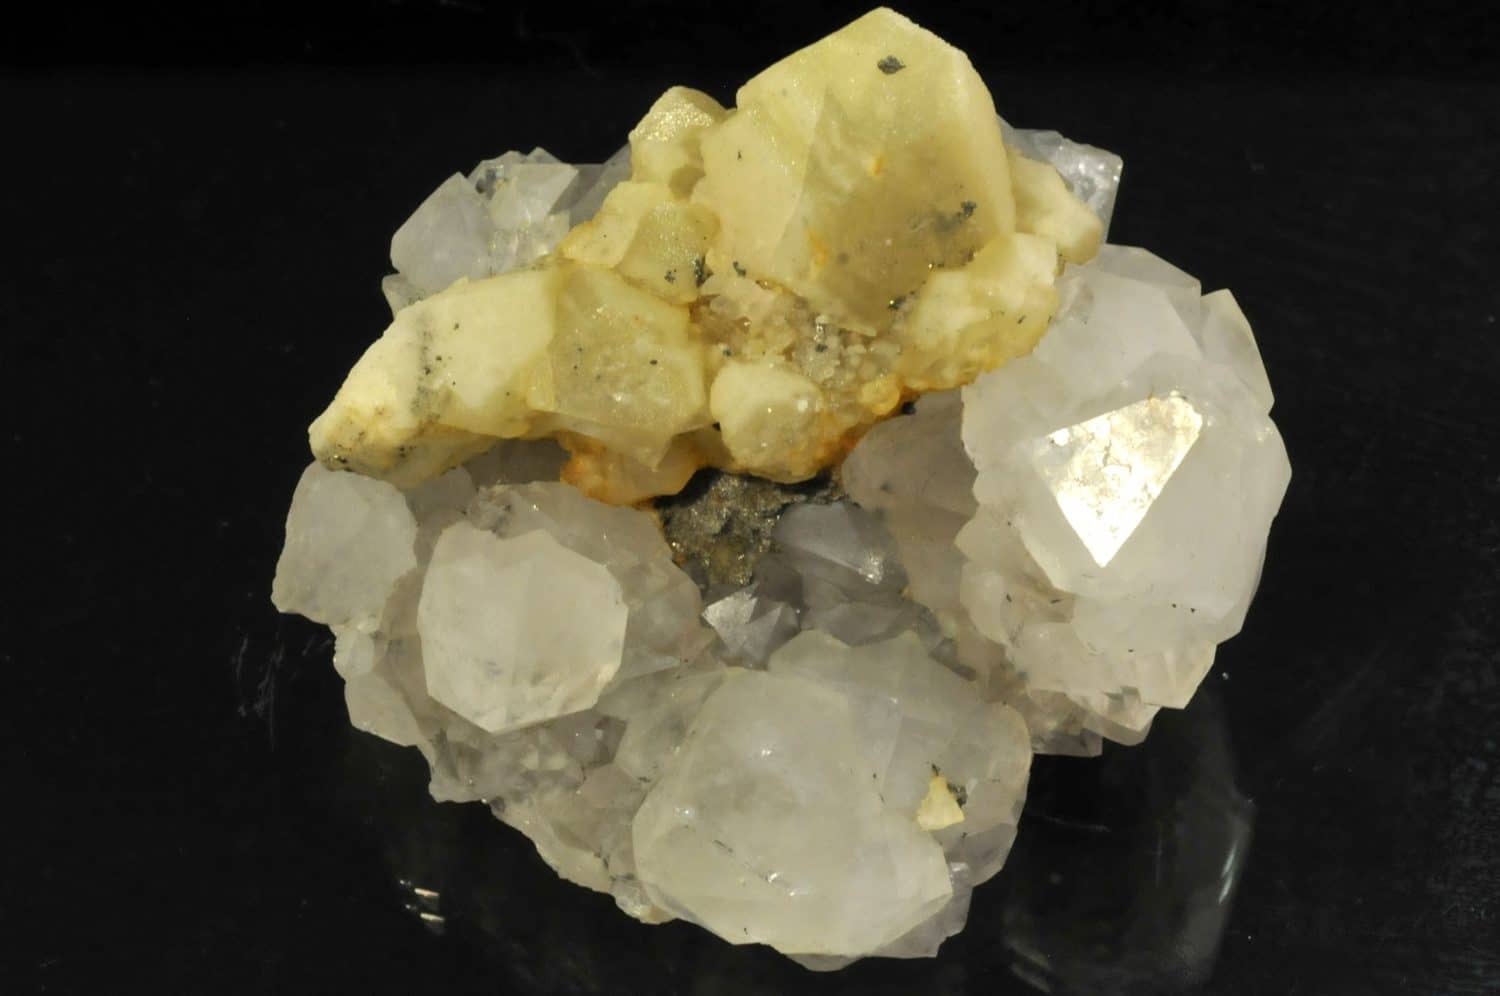 Calcite sur quartz de la mine de Peyrebrune (Tarn).